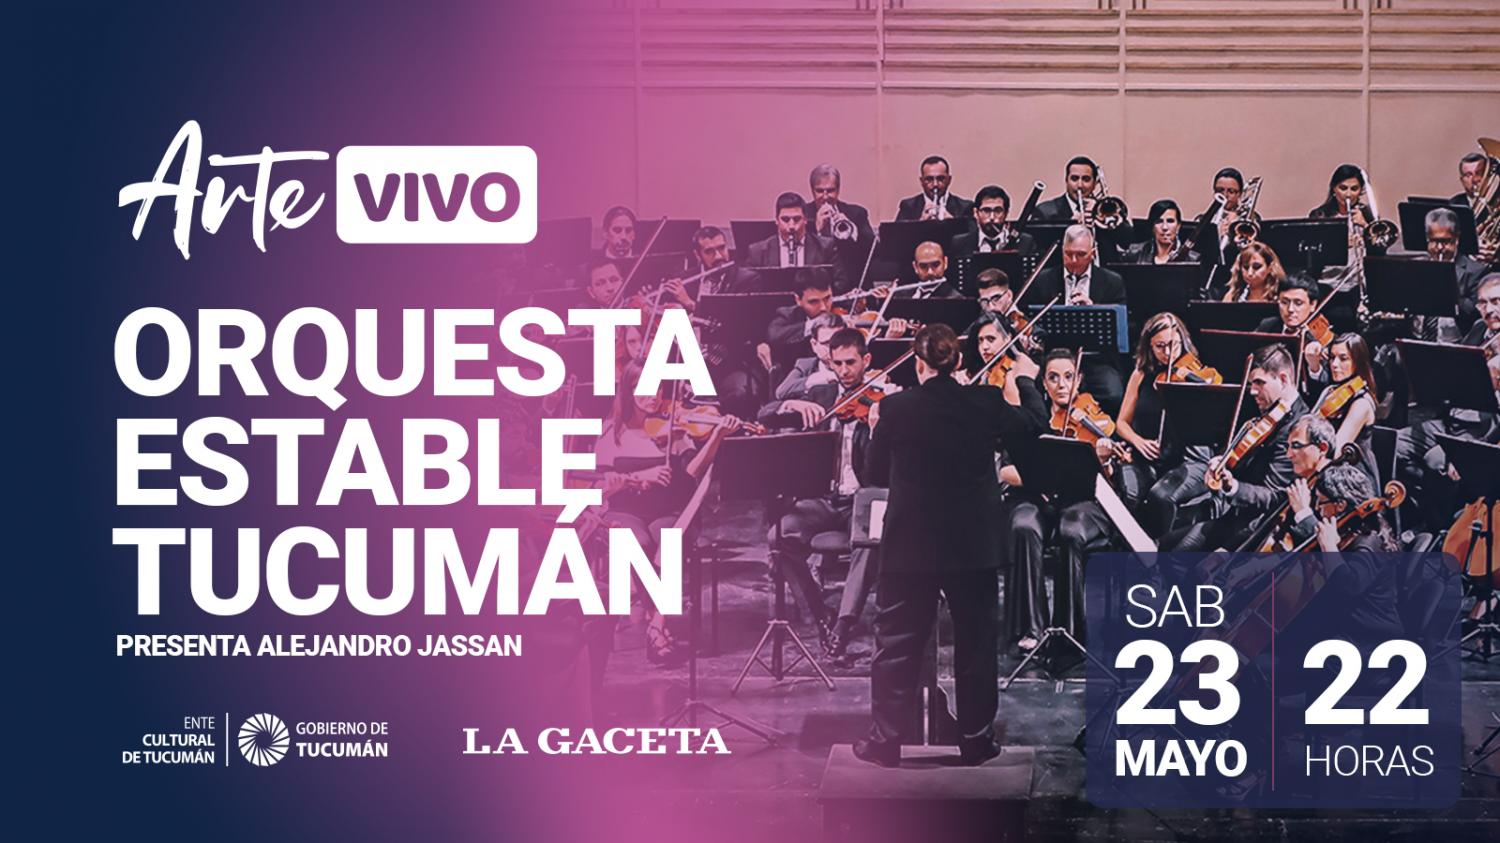 Manu Sija y la Orquesta Estable de Tucumán, en dos conciertos de Arte Vivo